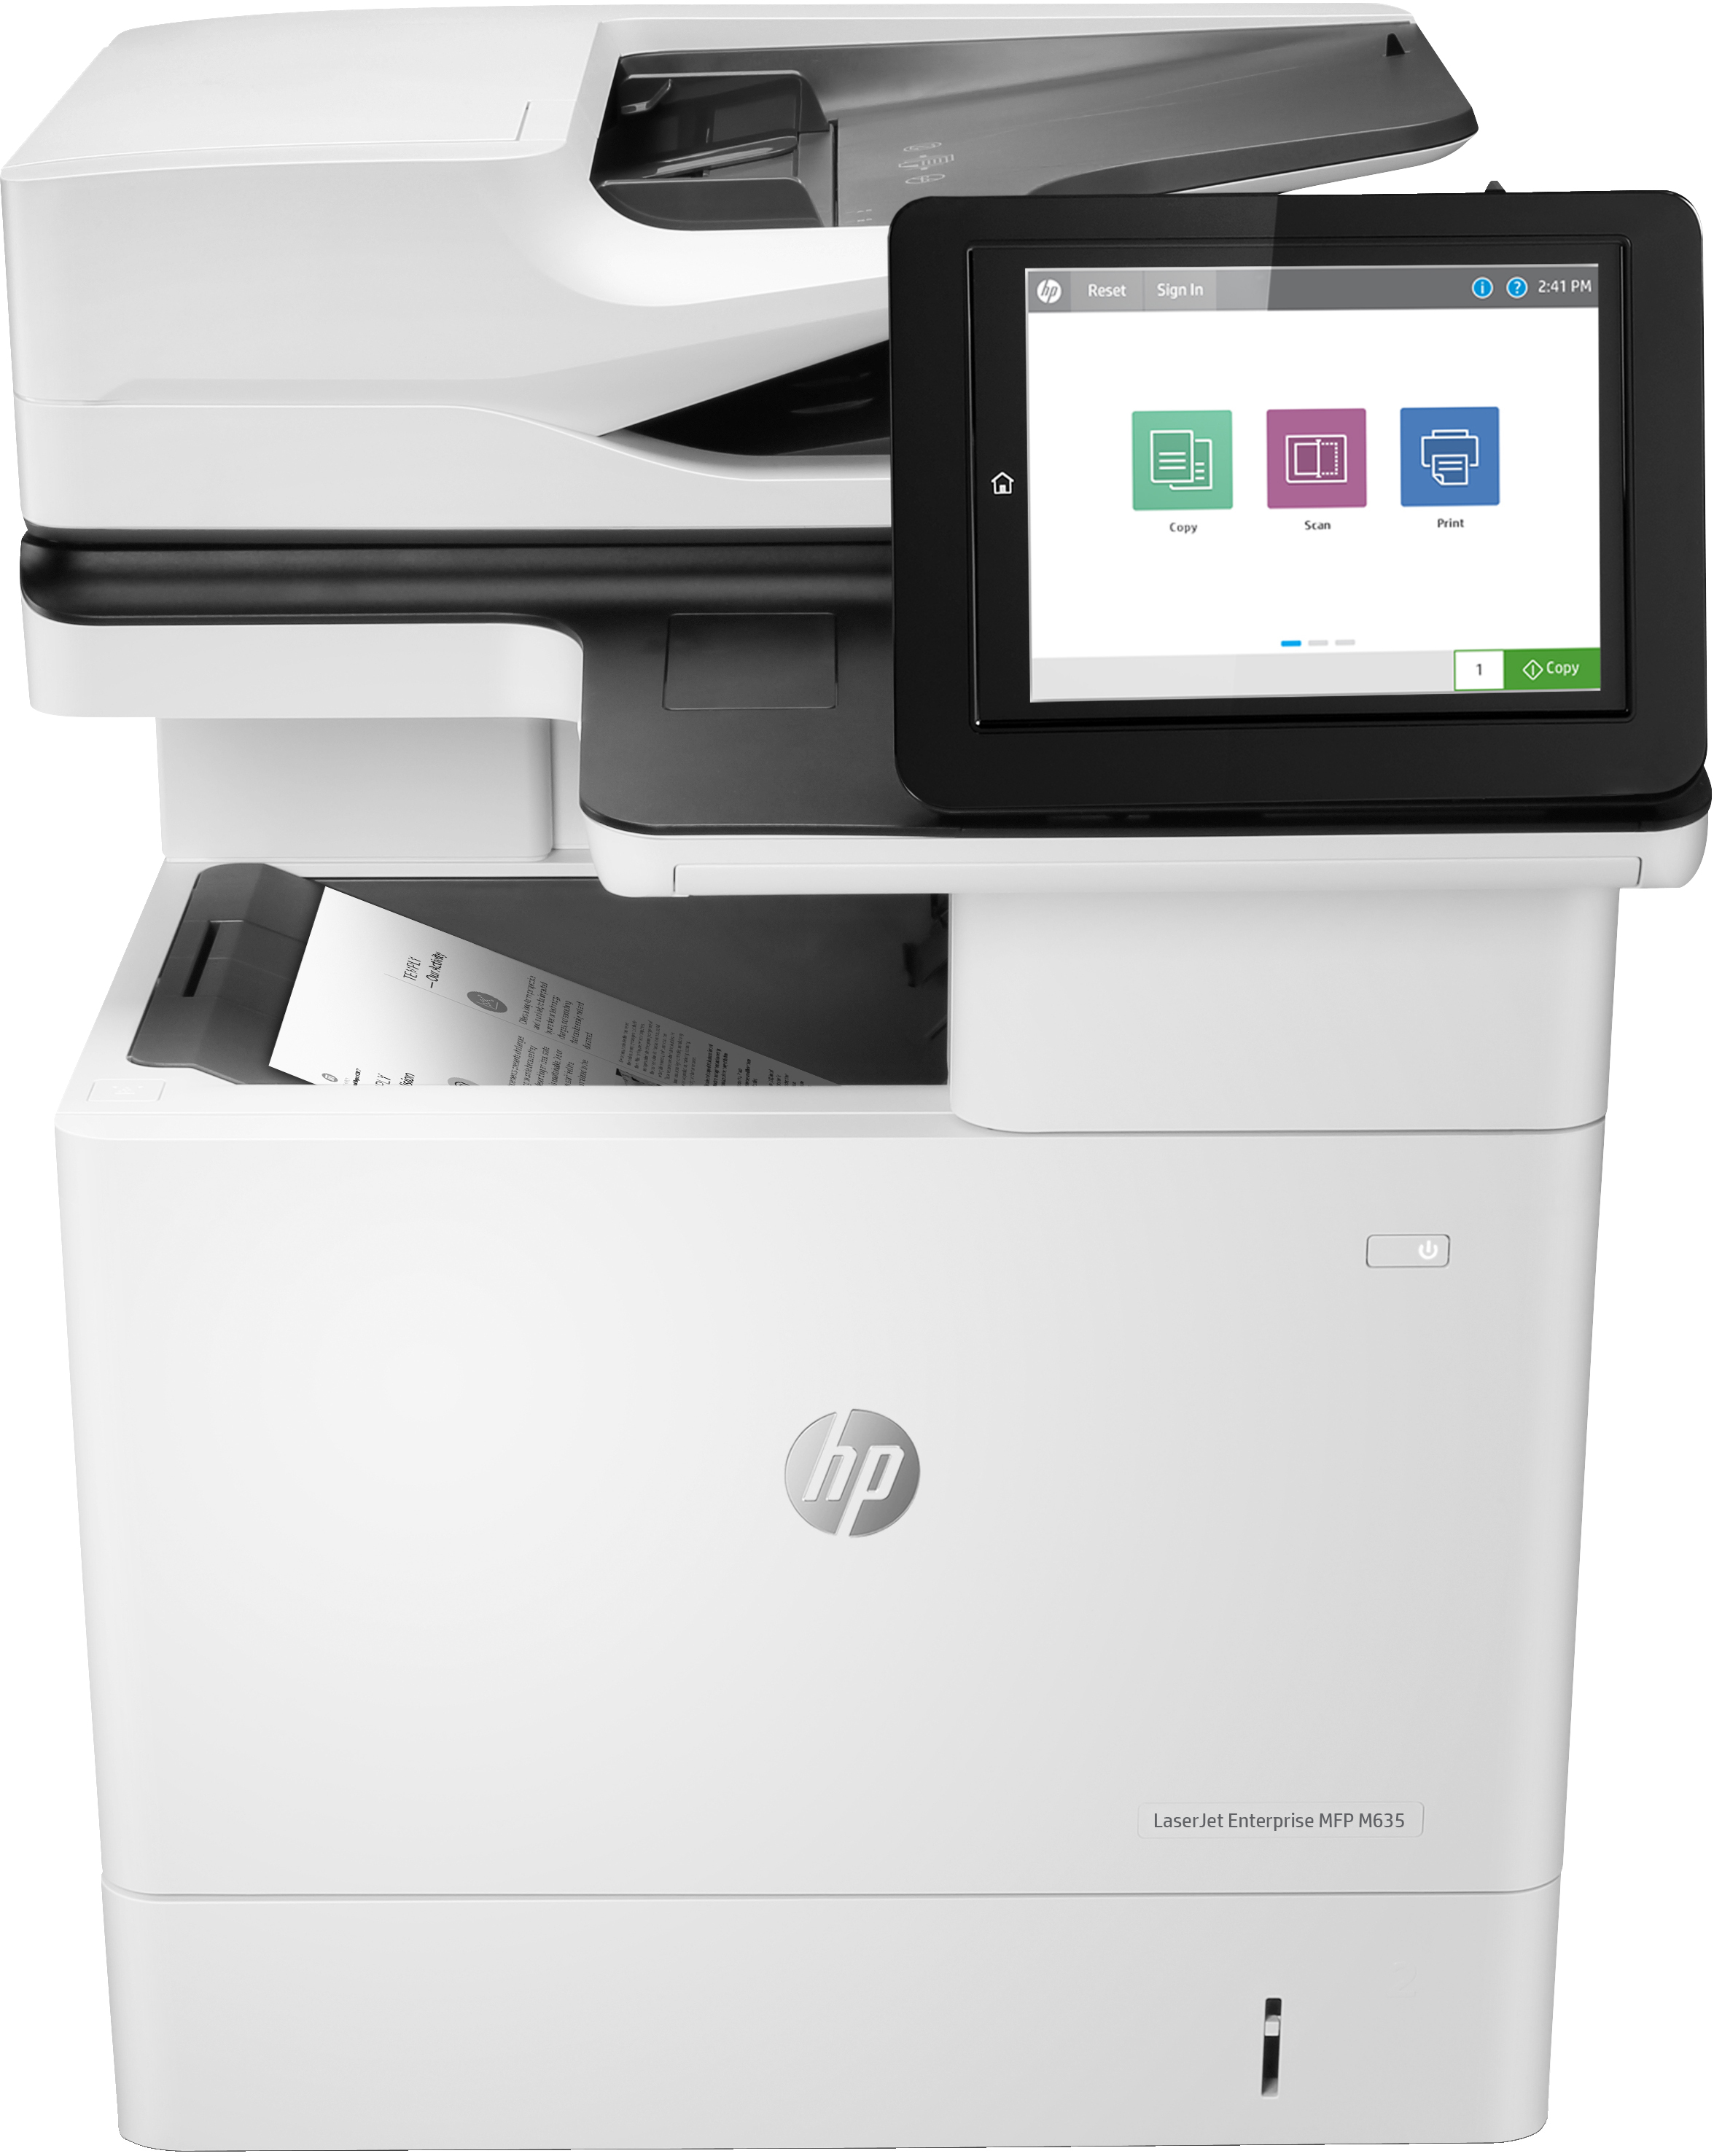 HP LaserJet Enterprise MFP M635h, Skriv ut, kopiera, skanna och faxa (tillval), Skanna till e-post; Dubbelsidig utskrift; ADF för 150 ark; Energieffektiv